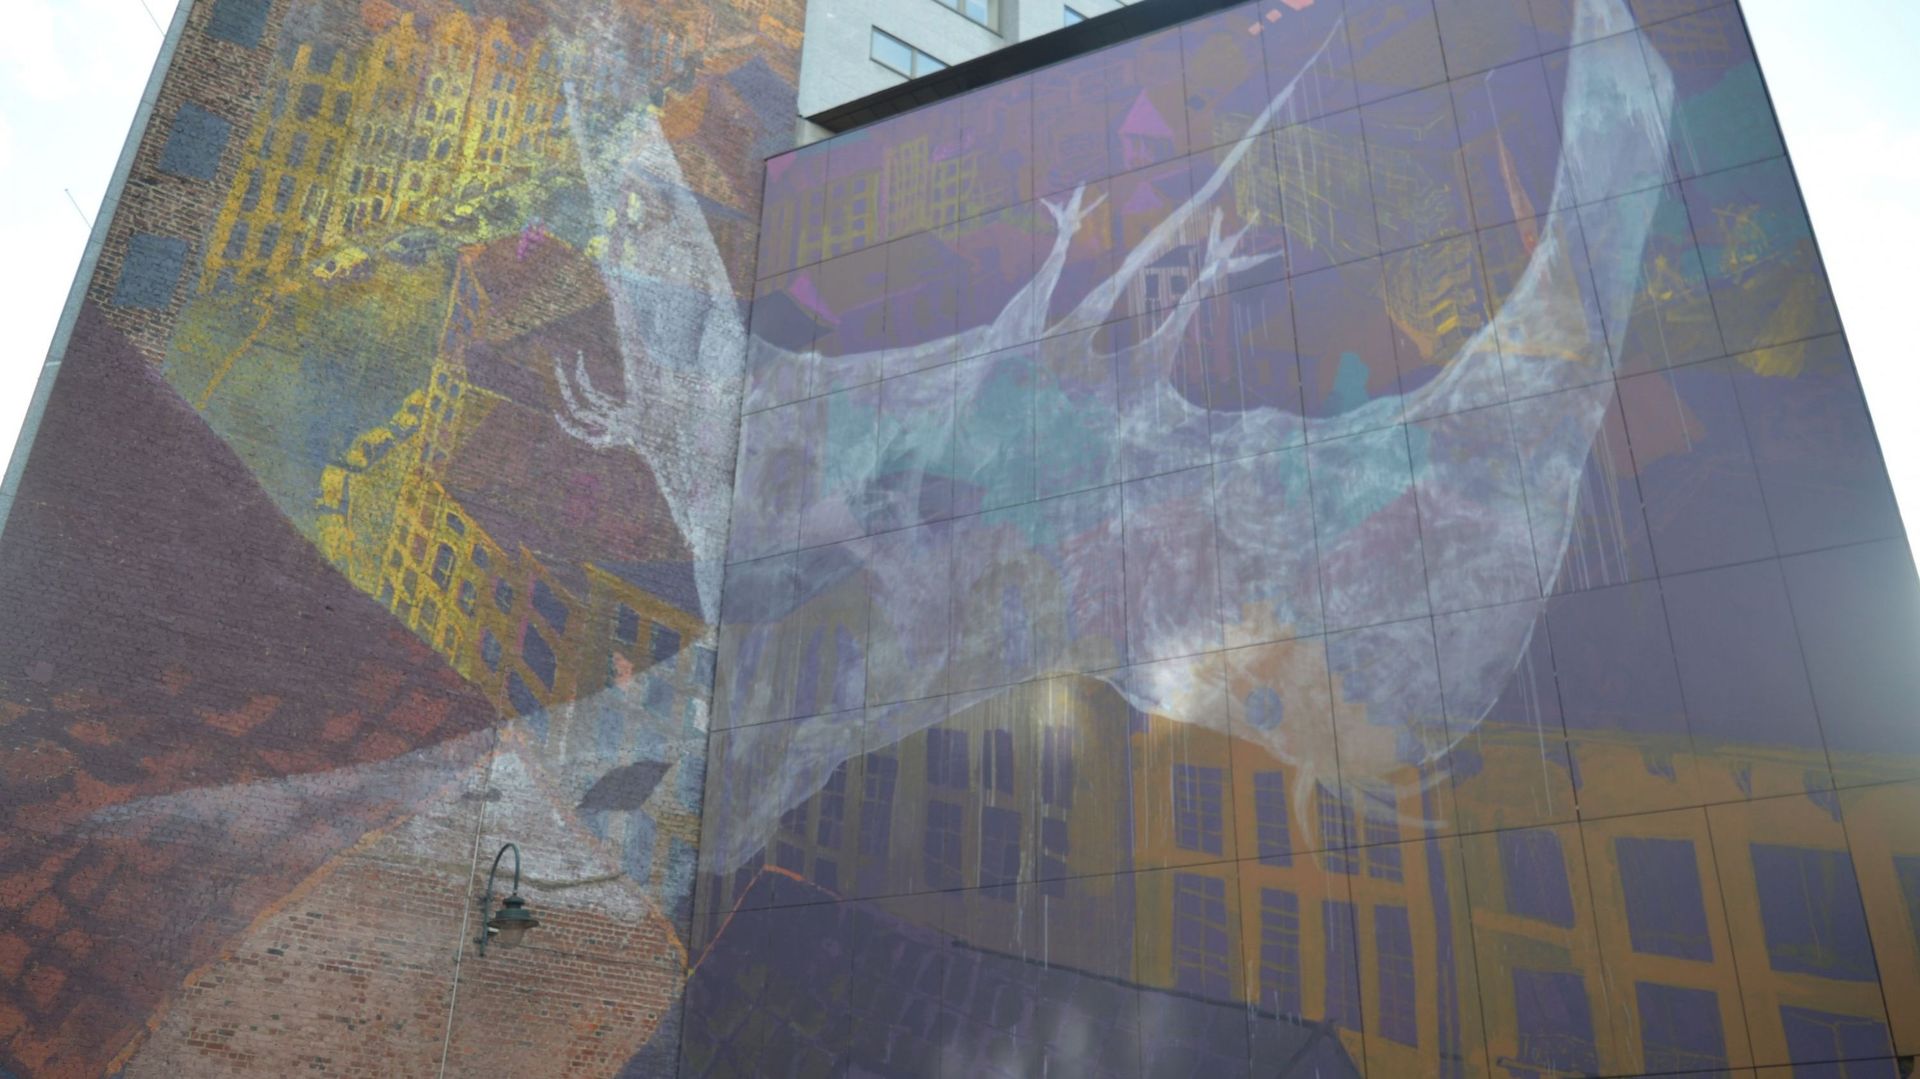 La fresque "Le Dinosaure transparent" officiellement inaugurée à Bruxelles